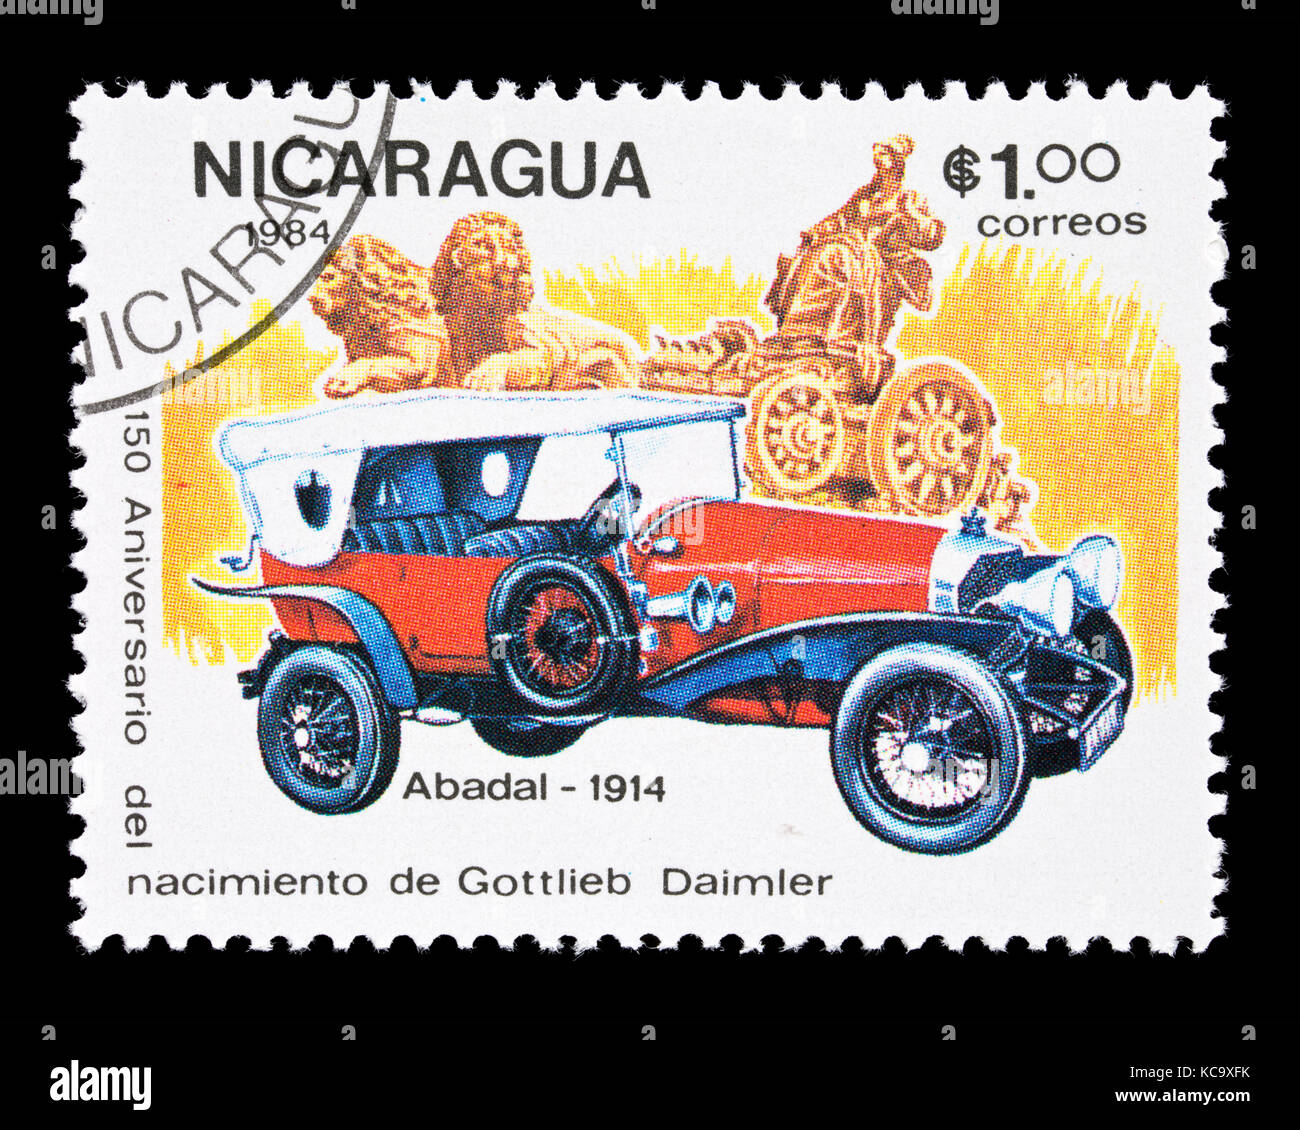 Timbre-poste du Nicaragua représentant une automobile classique 1914 Abadal, sesquicentennial de la naissance de Gottlieb Daimler. Banque D'Images